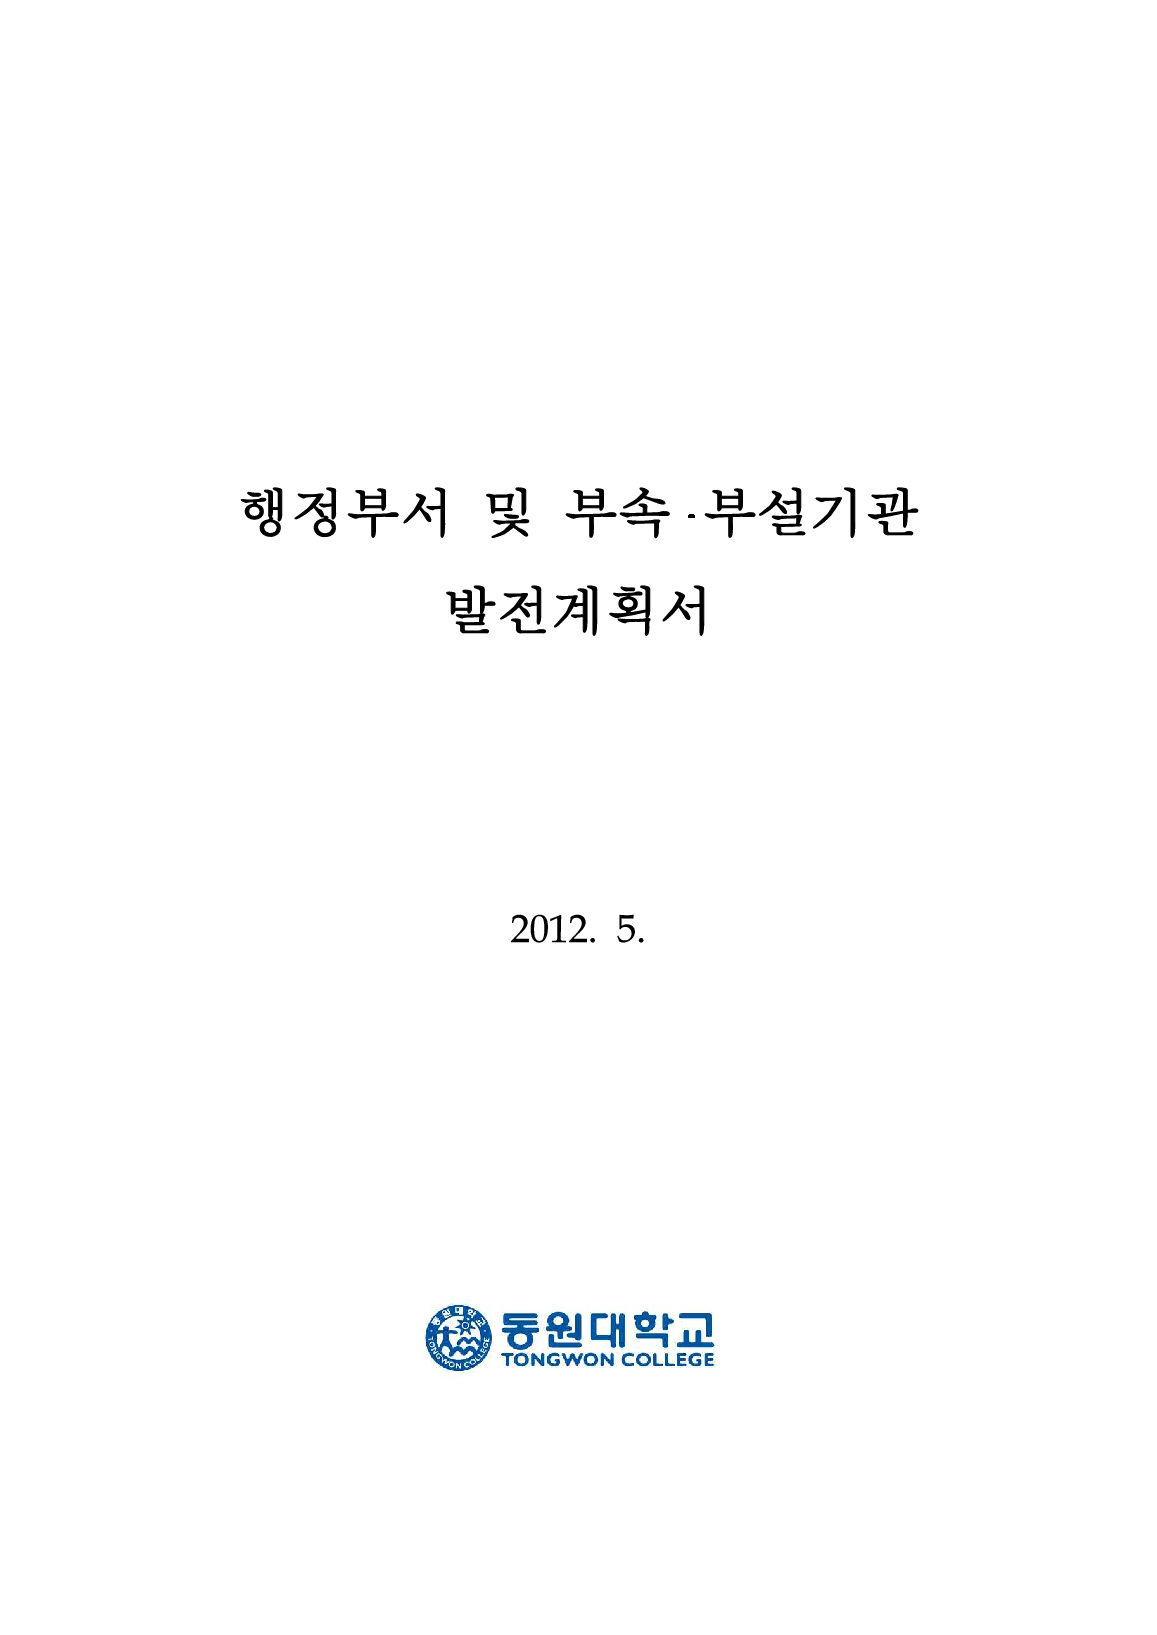 2012 행정부서 및 부속 부설기관 발전계획서